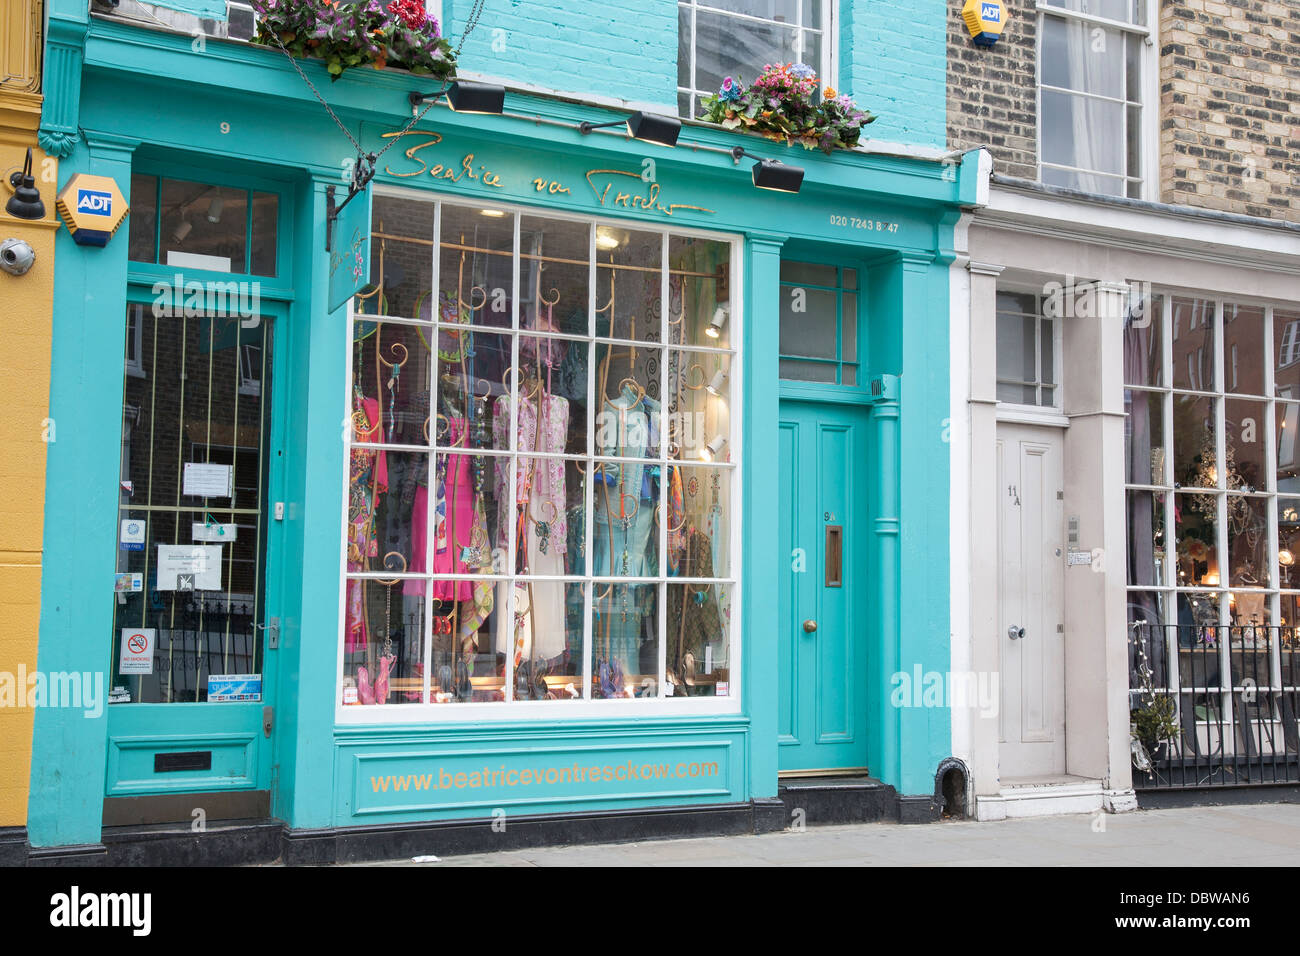 Beatrice Von Tresckow Kleidung Shop, Portobello Road, London, England, UK Stockfoto